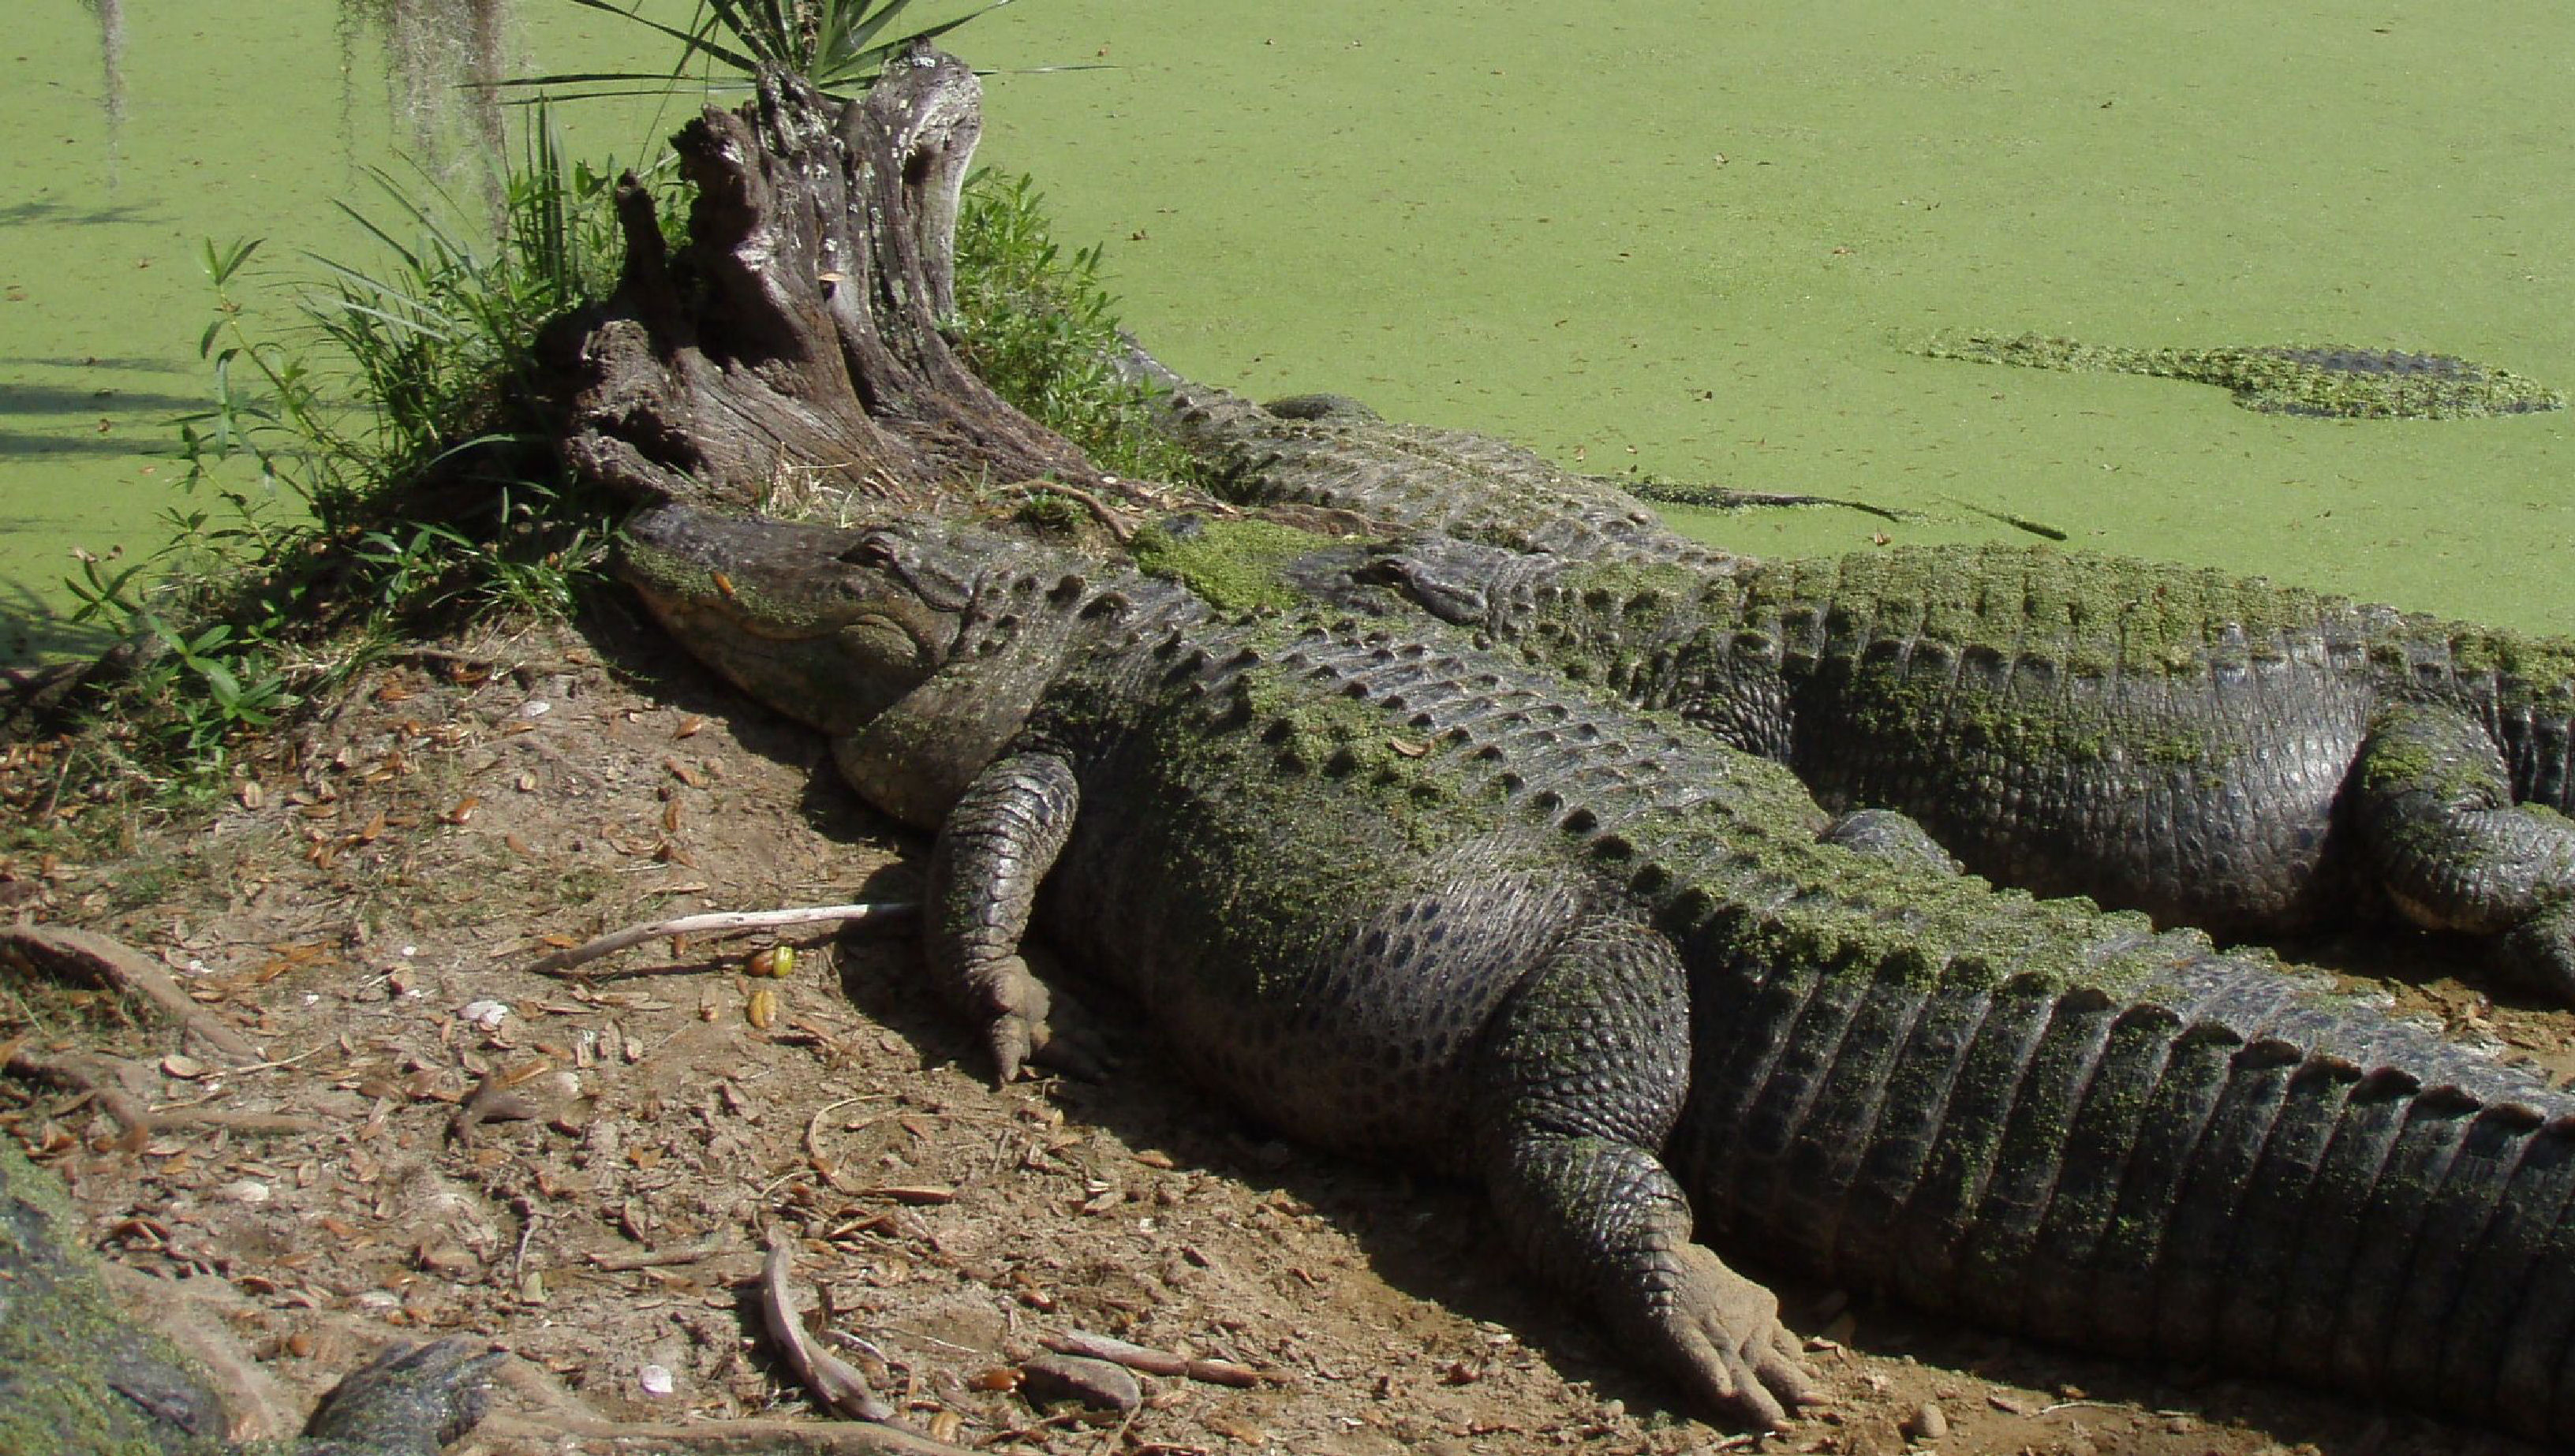 Alligator Escorts